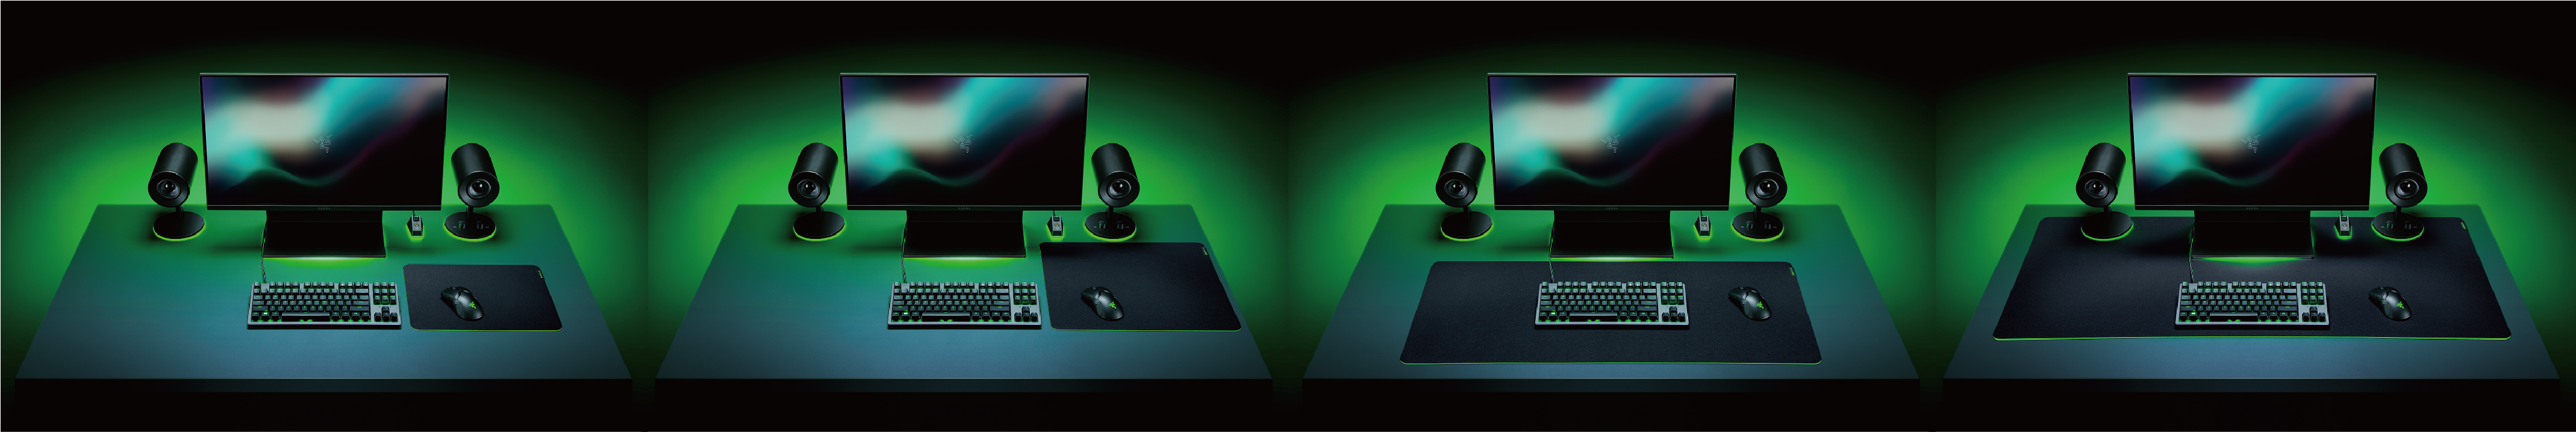 ゲーミング用マウスパッド Razer Gigantus V2が4つのサイズバリエーションで発売決定 Razerのプレスリリース